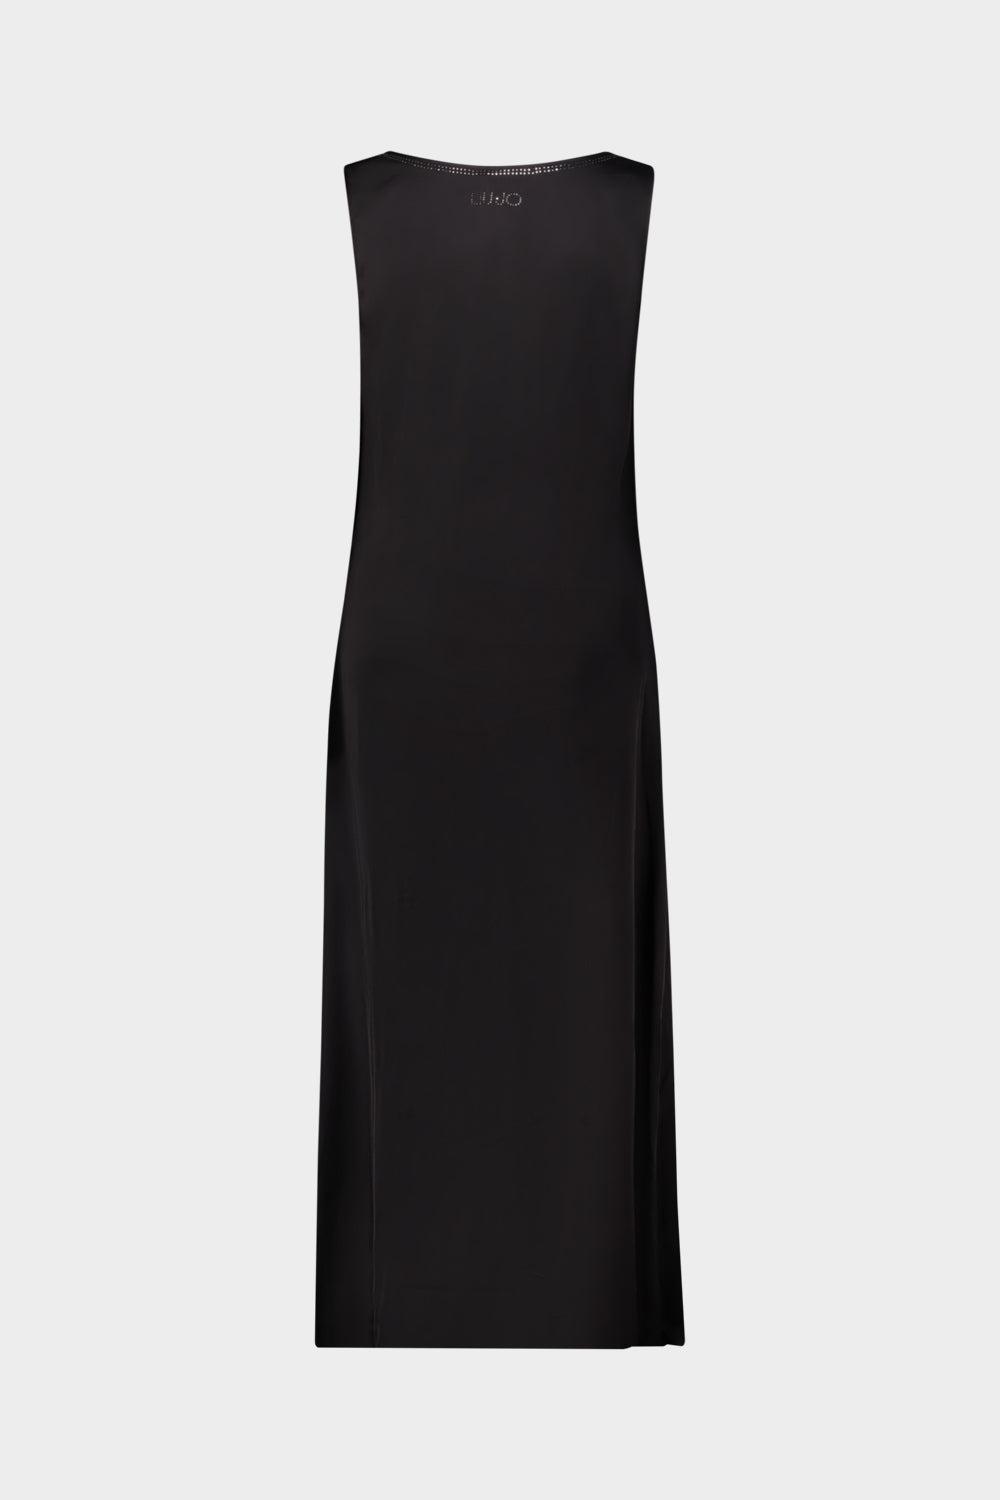 שמלת אי ליין לנשים אבני חן LIU JO Vendome online | ונדום .